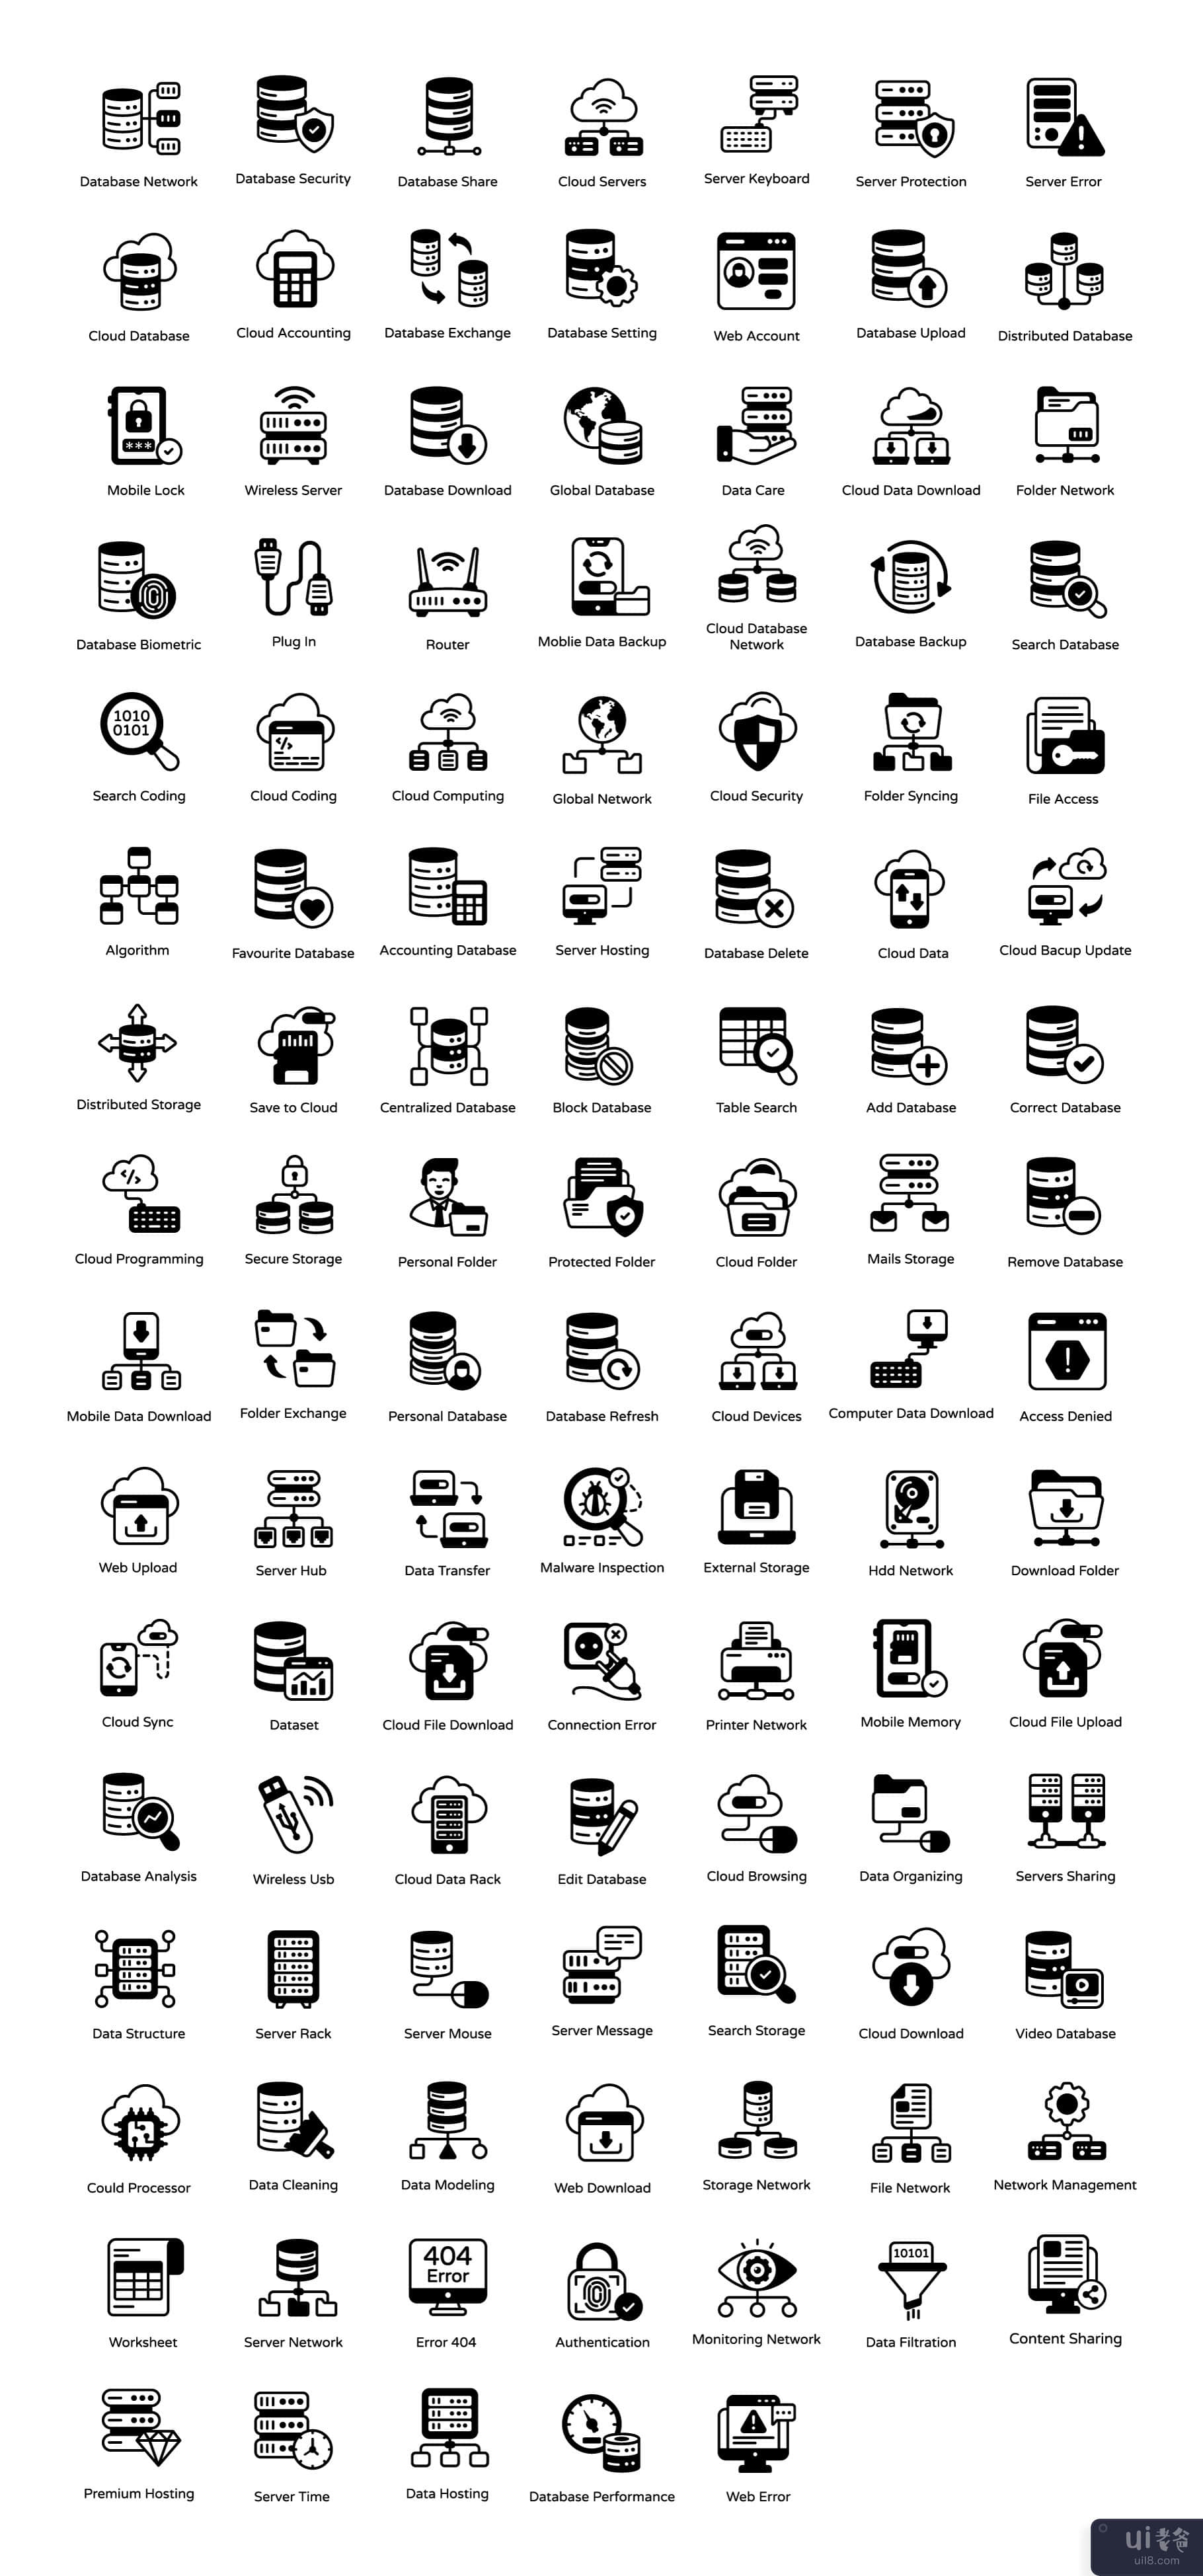 110 个数据库和技术图标(110 Database and Technology Icons)插图4